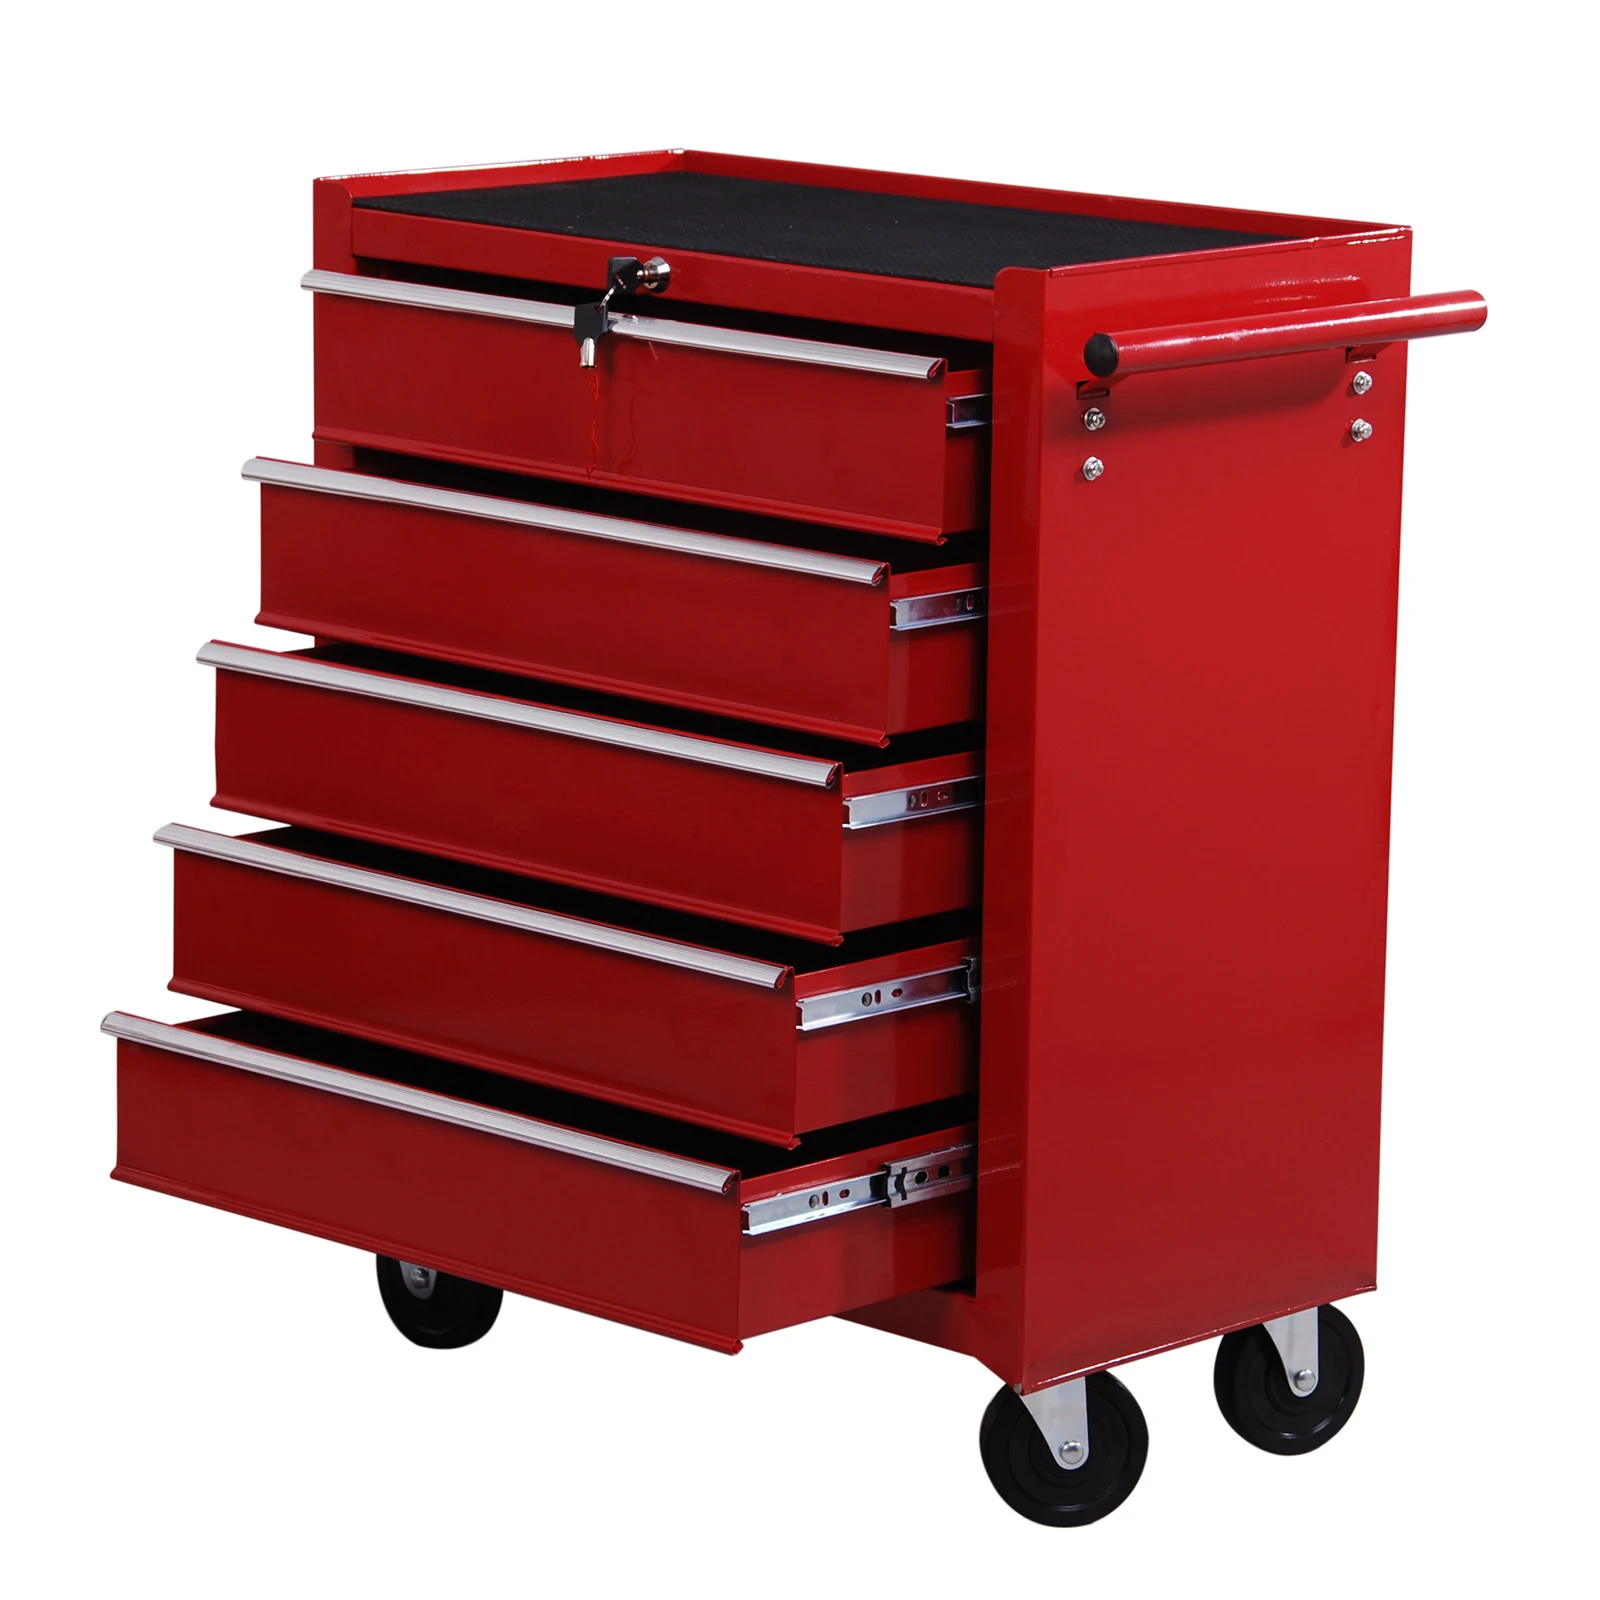 HOMCOM Carrito de taller para herramientas, con ruedas, caja de herramientas con 5 cajones, 1 unidad, color rojo